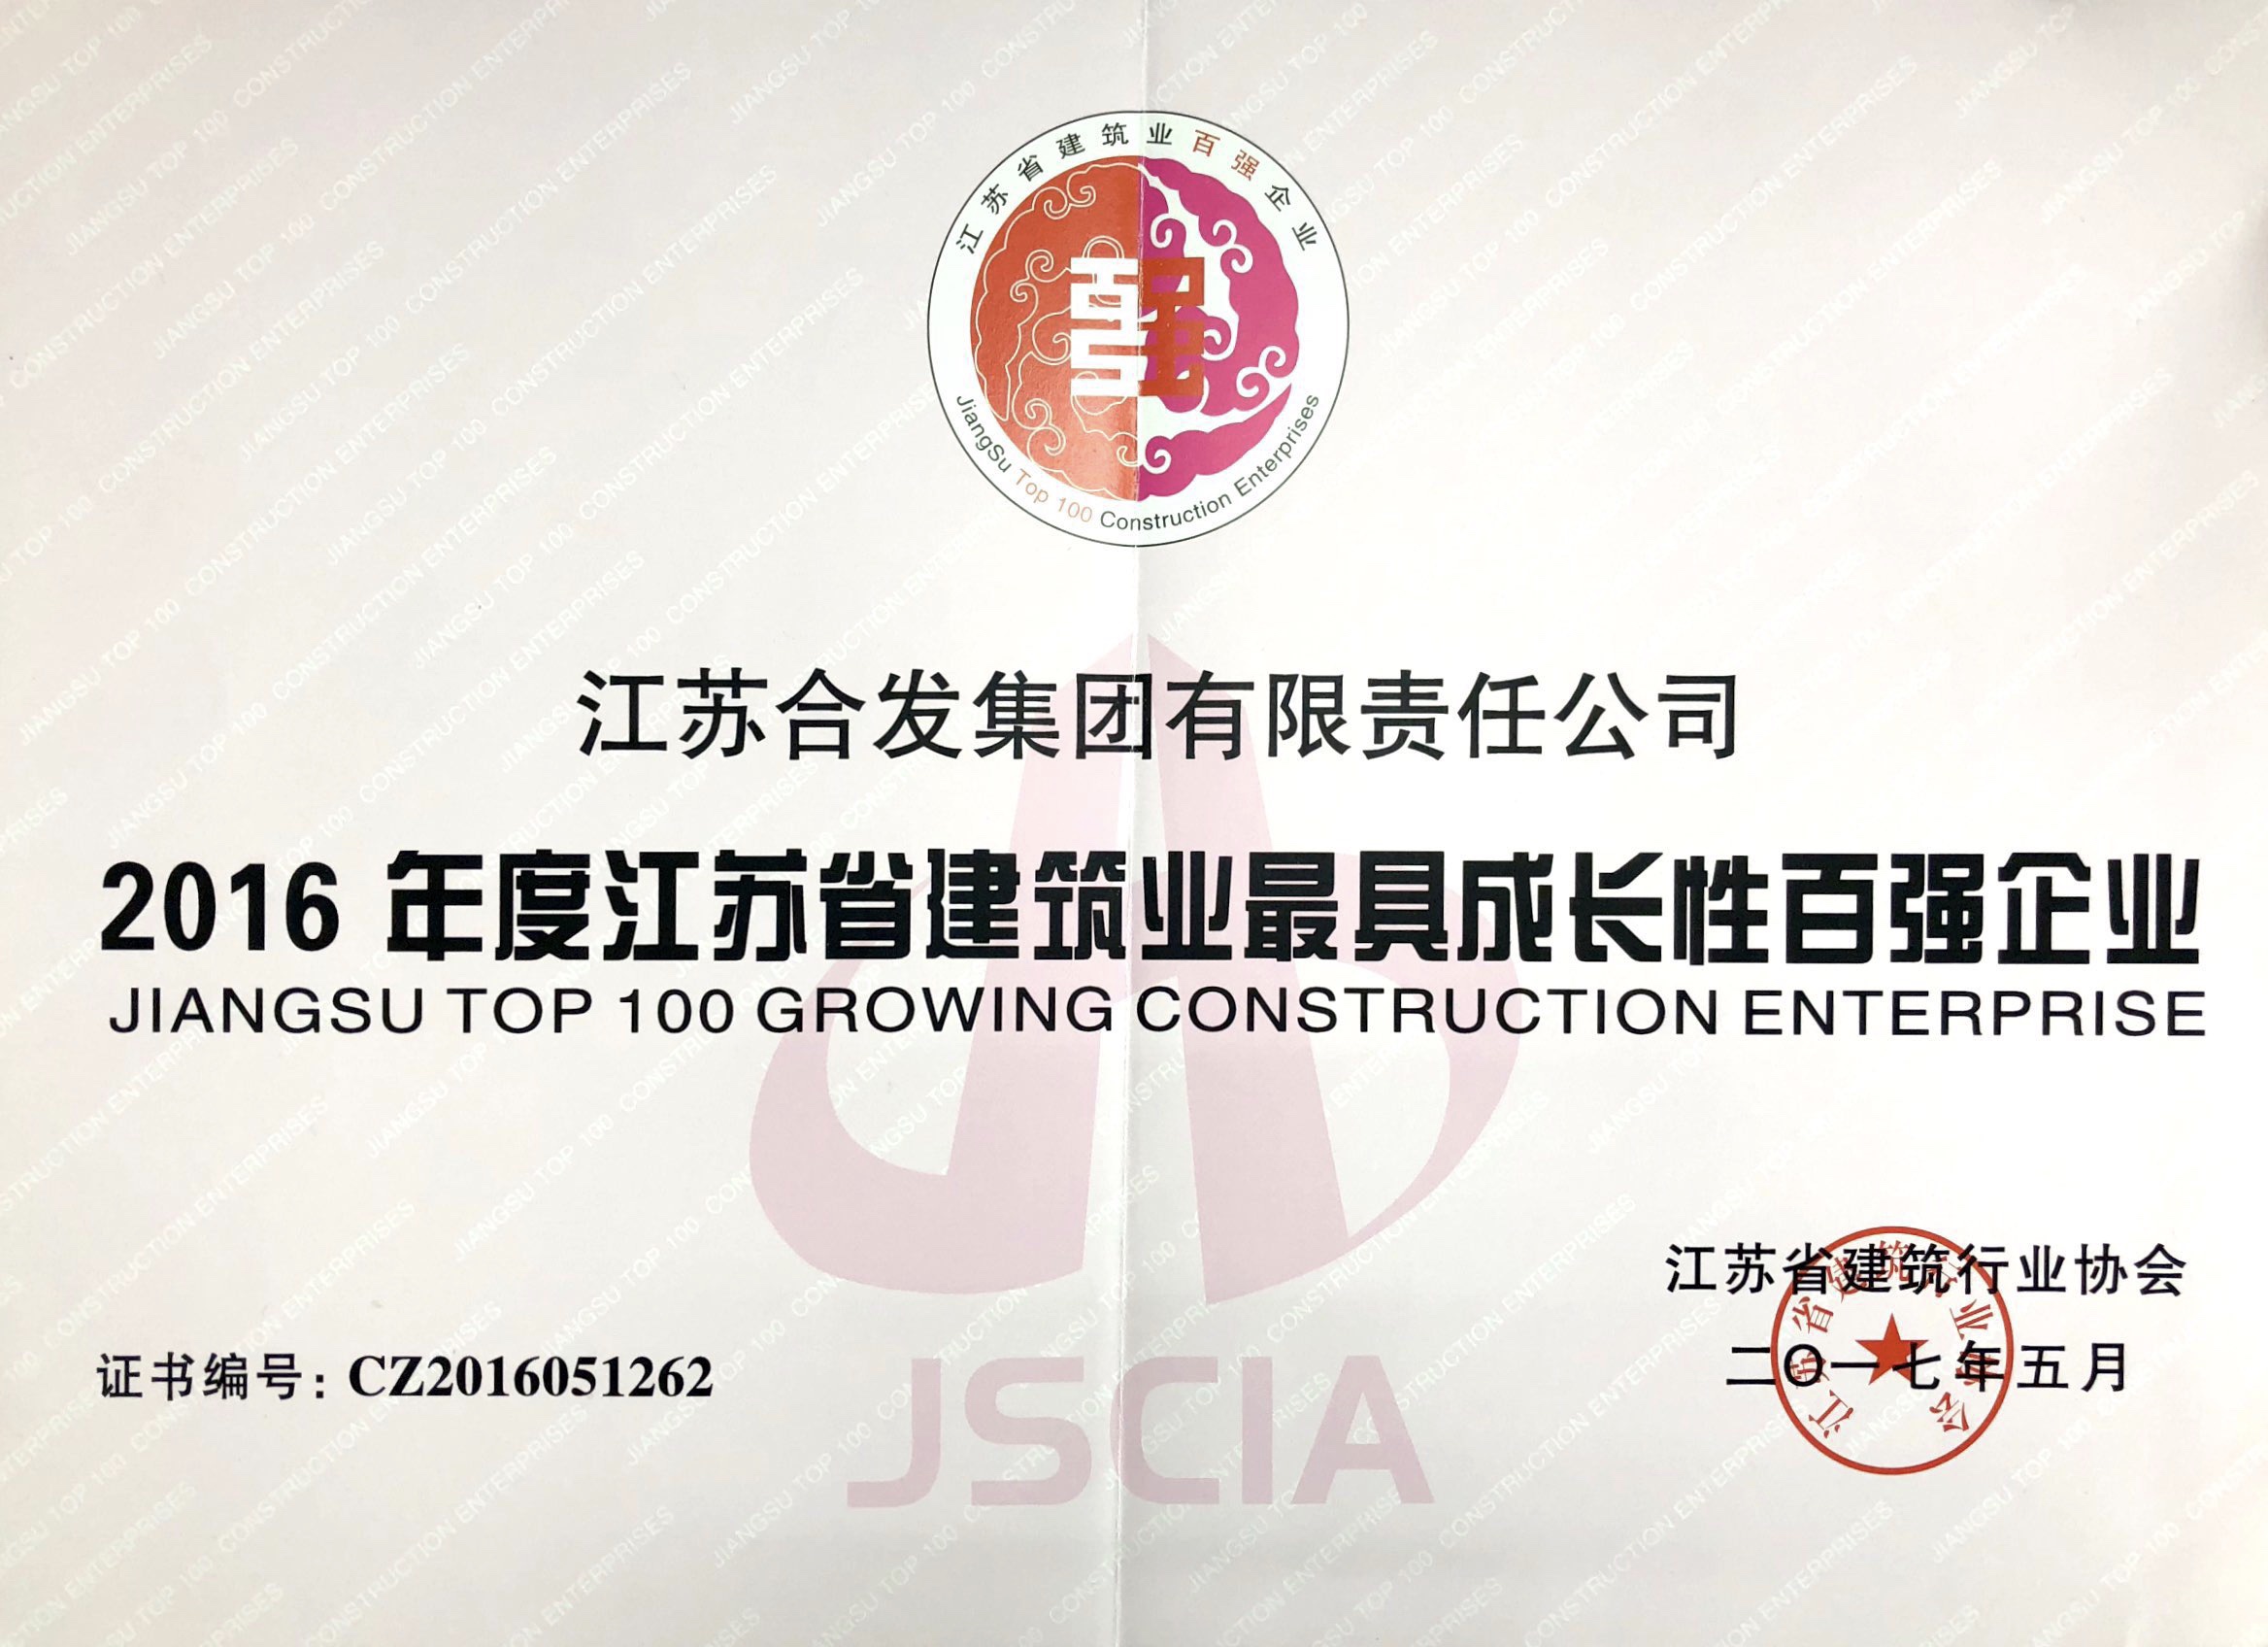 2016年度江苏省建筑业最具成长性百强企业